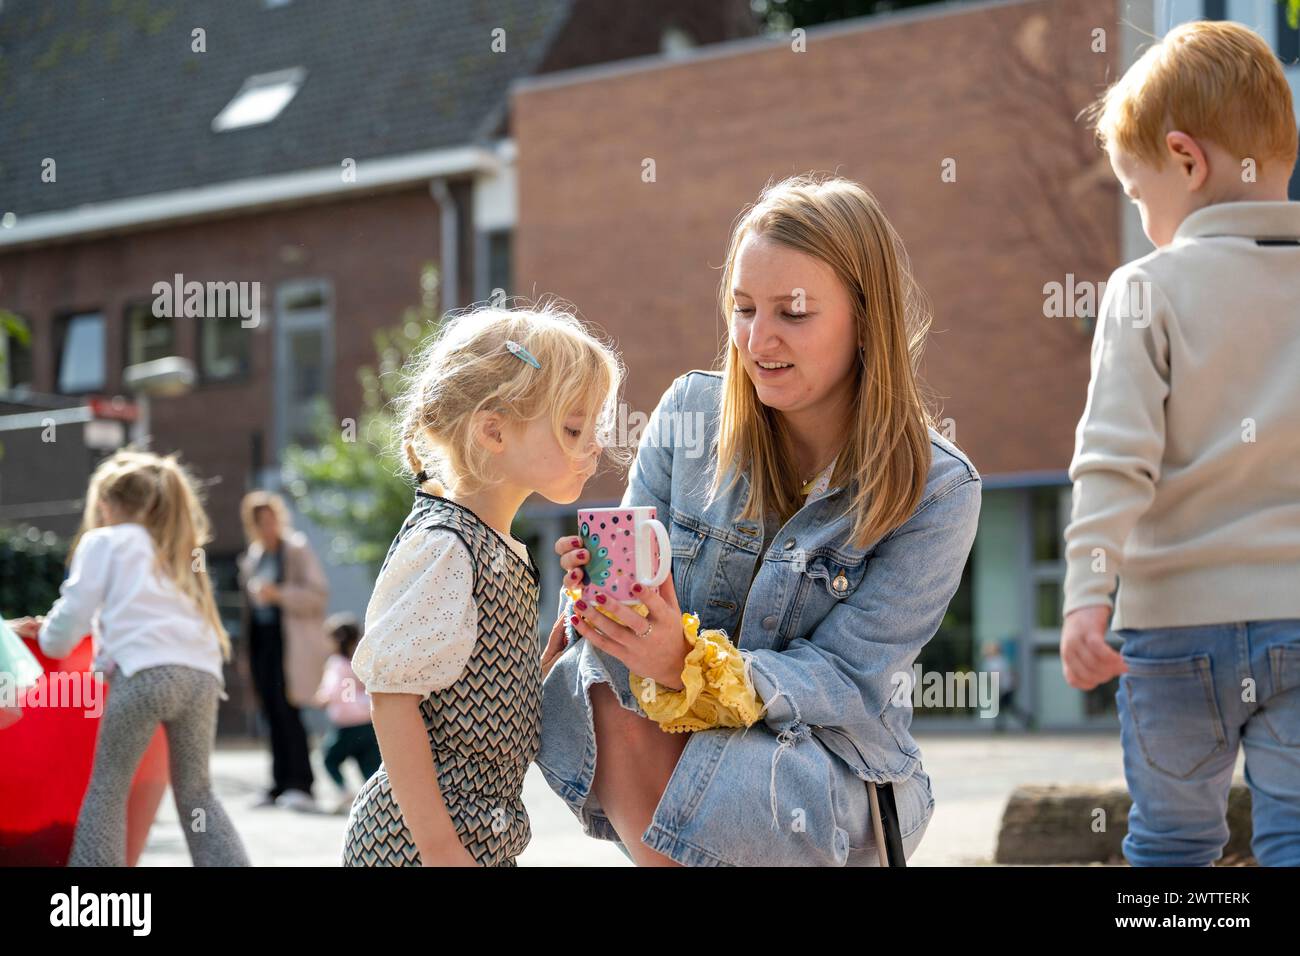 Un gioioso momento all'aperto mentre una donna condivide qualcosa di divertente sul suo smartphone con una bambina Foto Stock